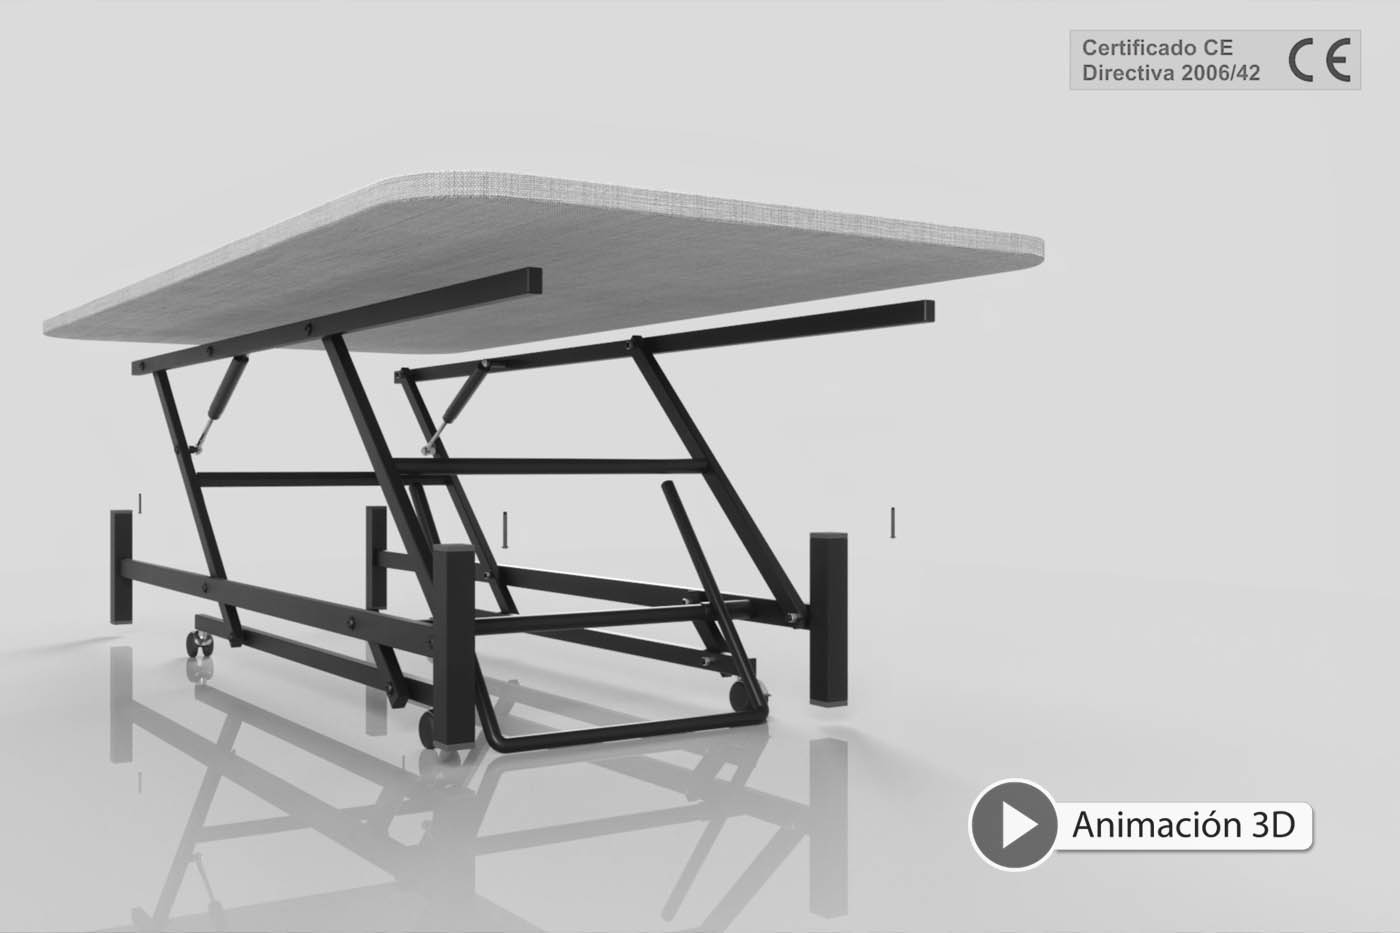 Animación 3D de una cama elevable con pedal con certificado CE